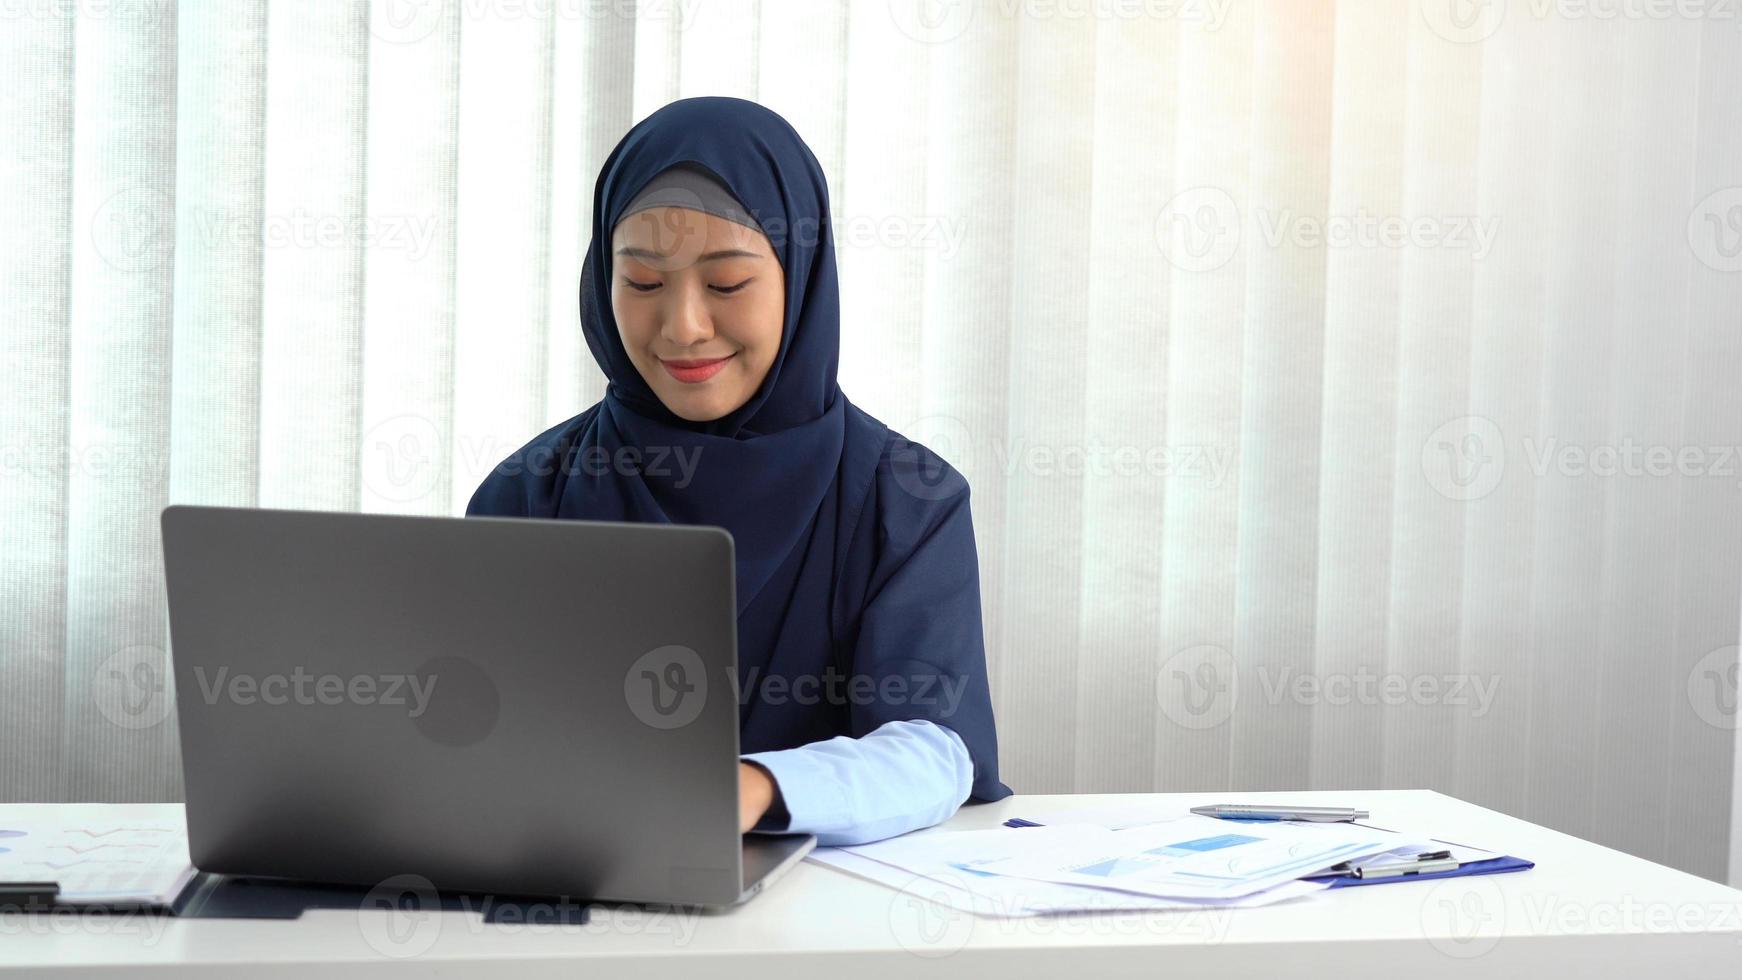 jonge Arabische vrouw zit gelukkig op kantoor. foto